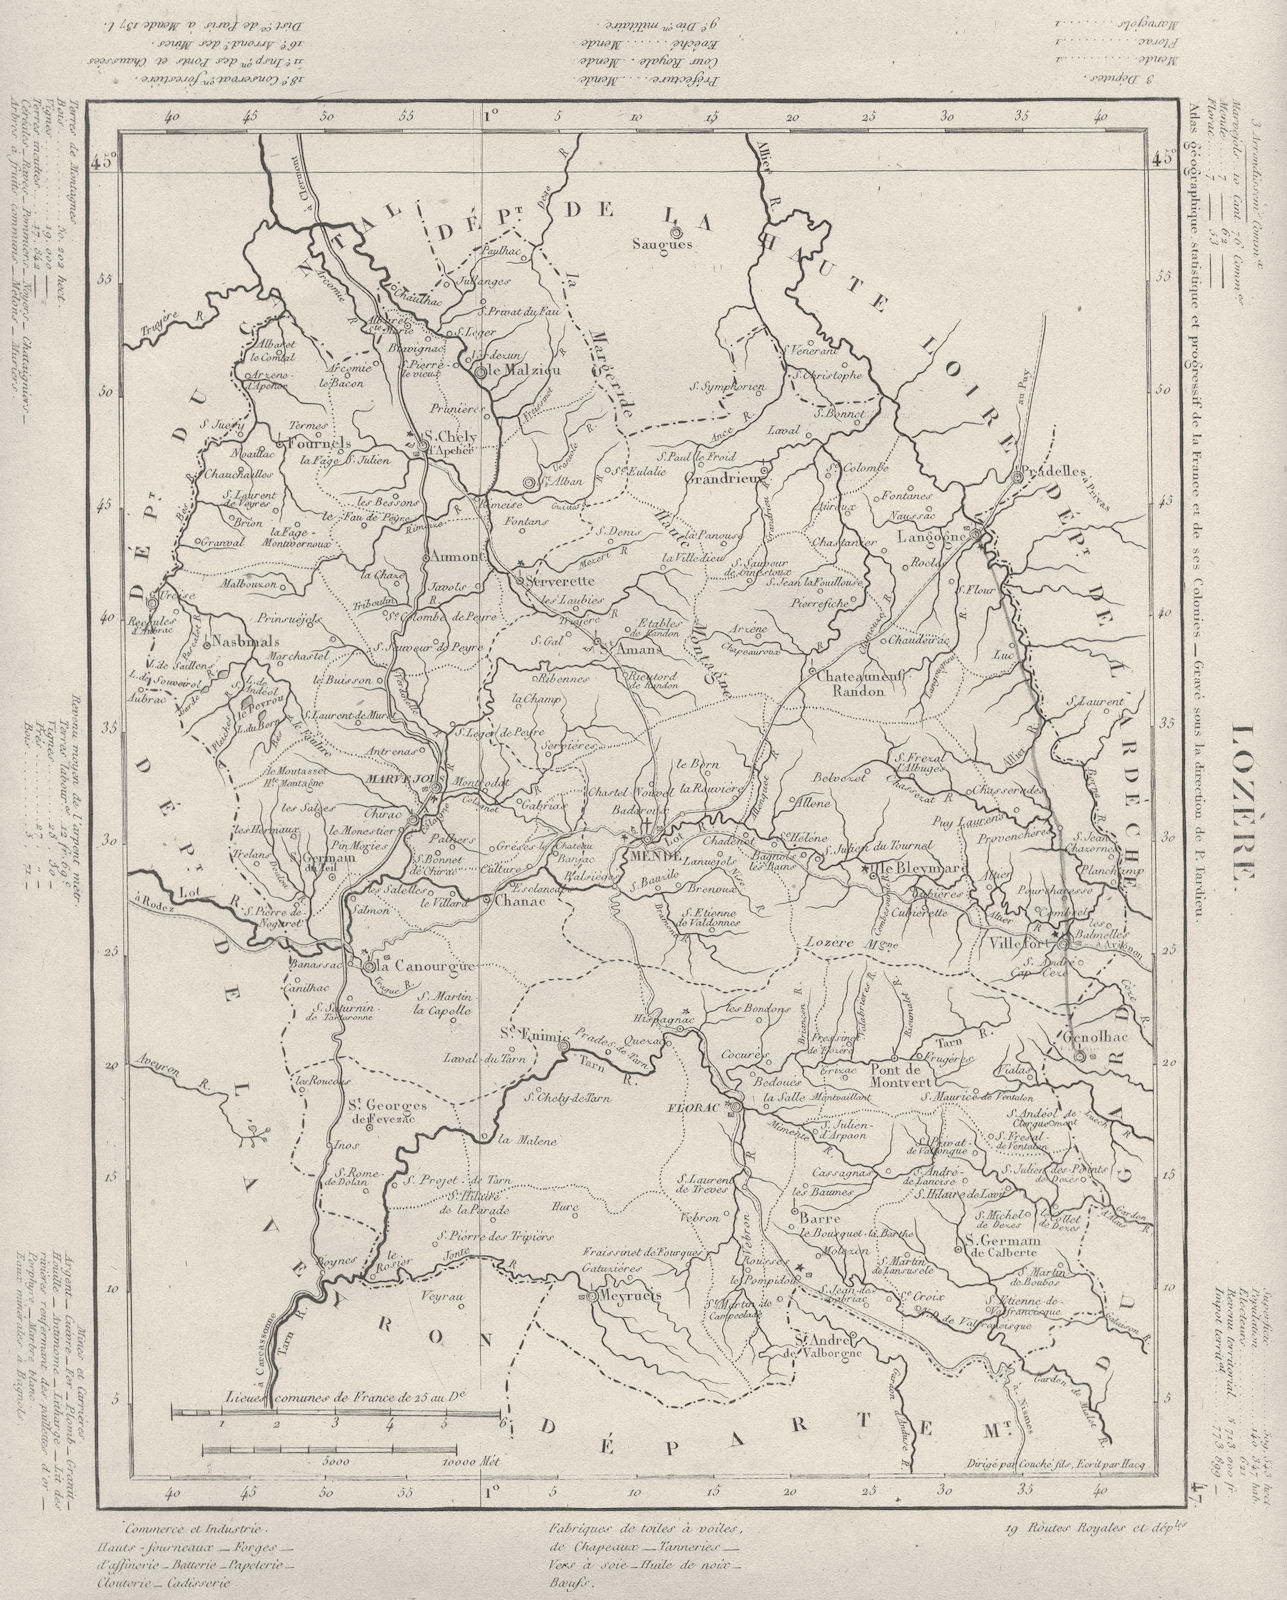 LOZÈRE. Lozère département. Tardieu 1830 old antique vintage map plan chart